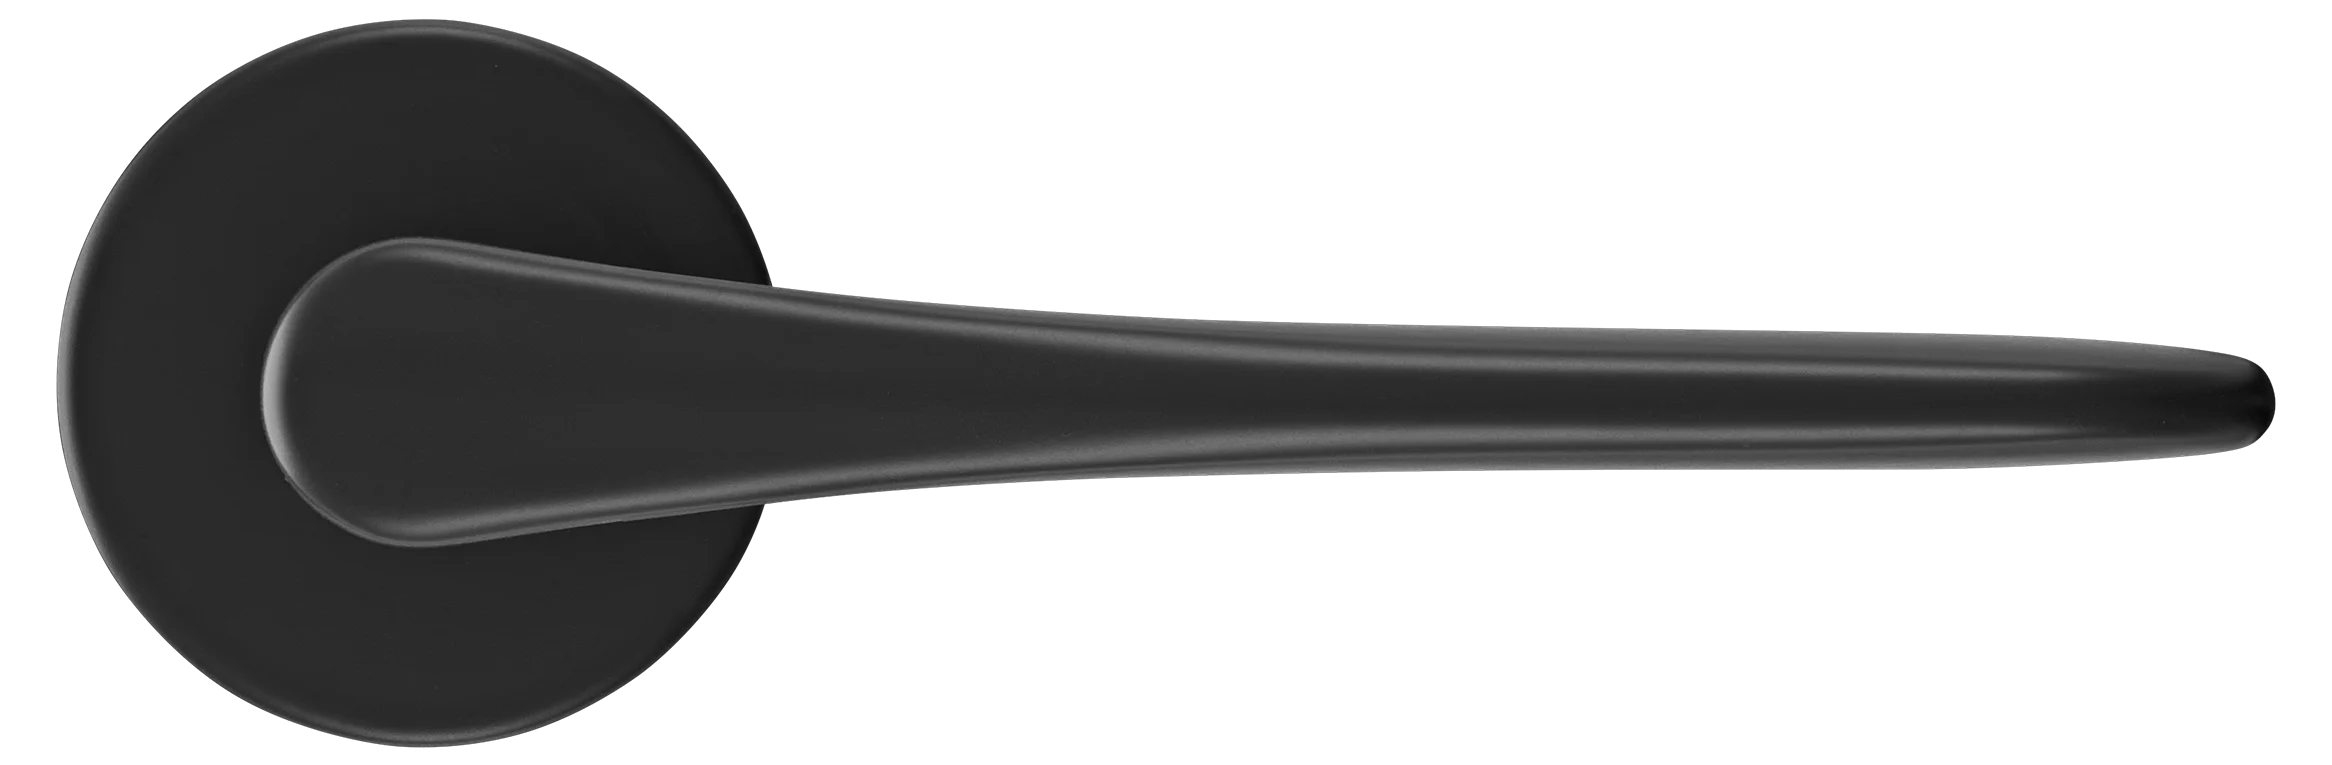 AULA R5 NERO, ручка дверная на розетке 7мм, цвет -  черный фото купить в СПб